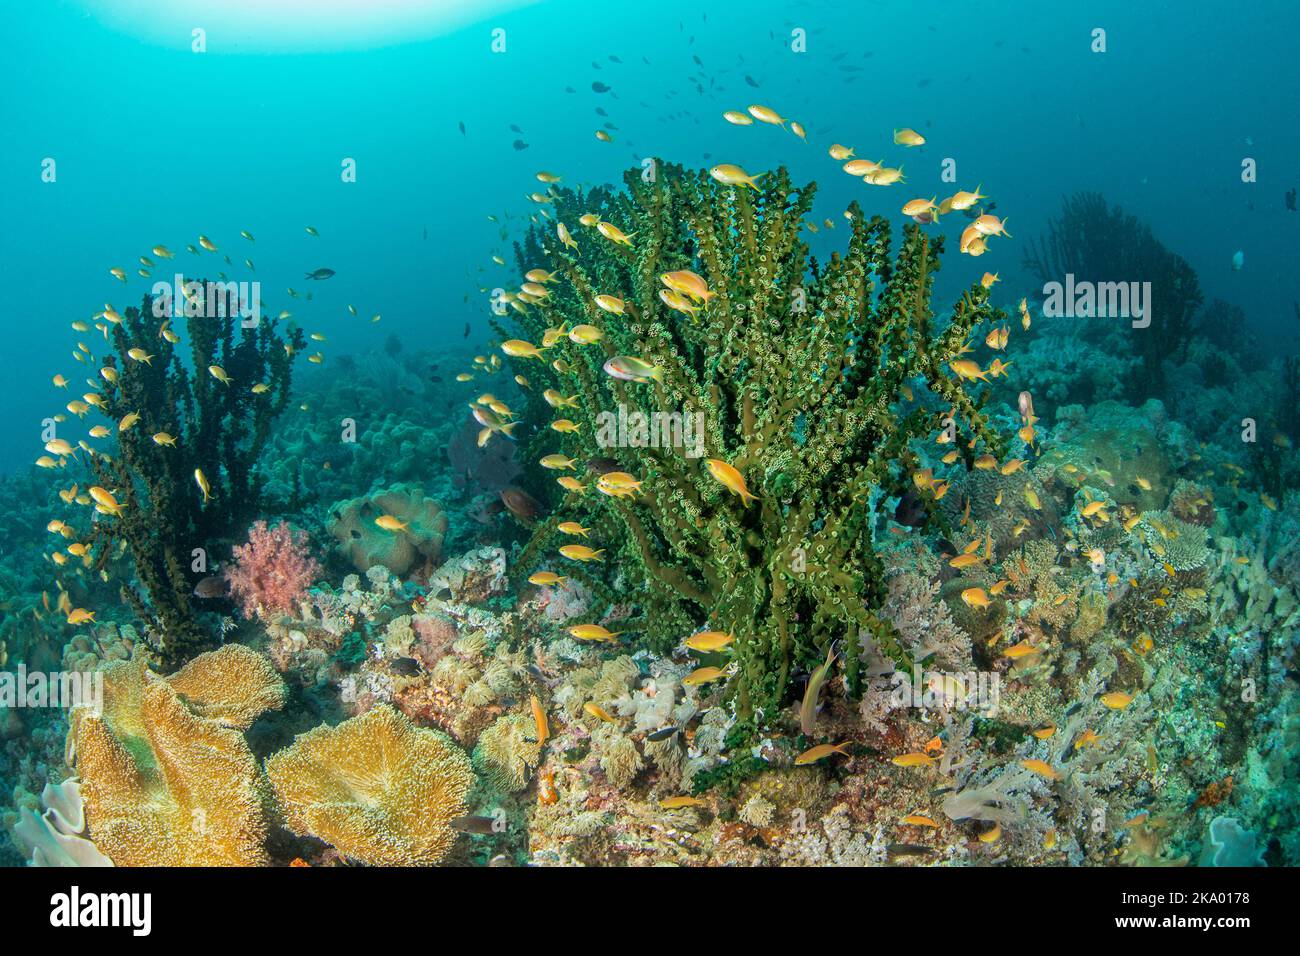 Anthias scuola intorno ad una colonia di corallo tubo verde, Tubastrea micrantha, Filippine. Foto Stock